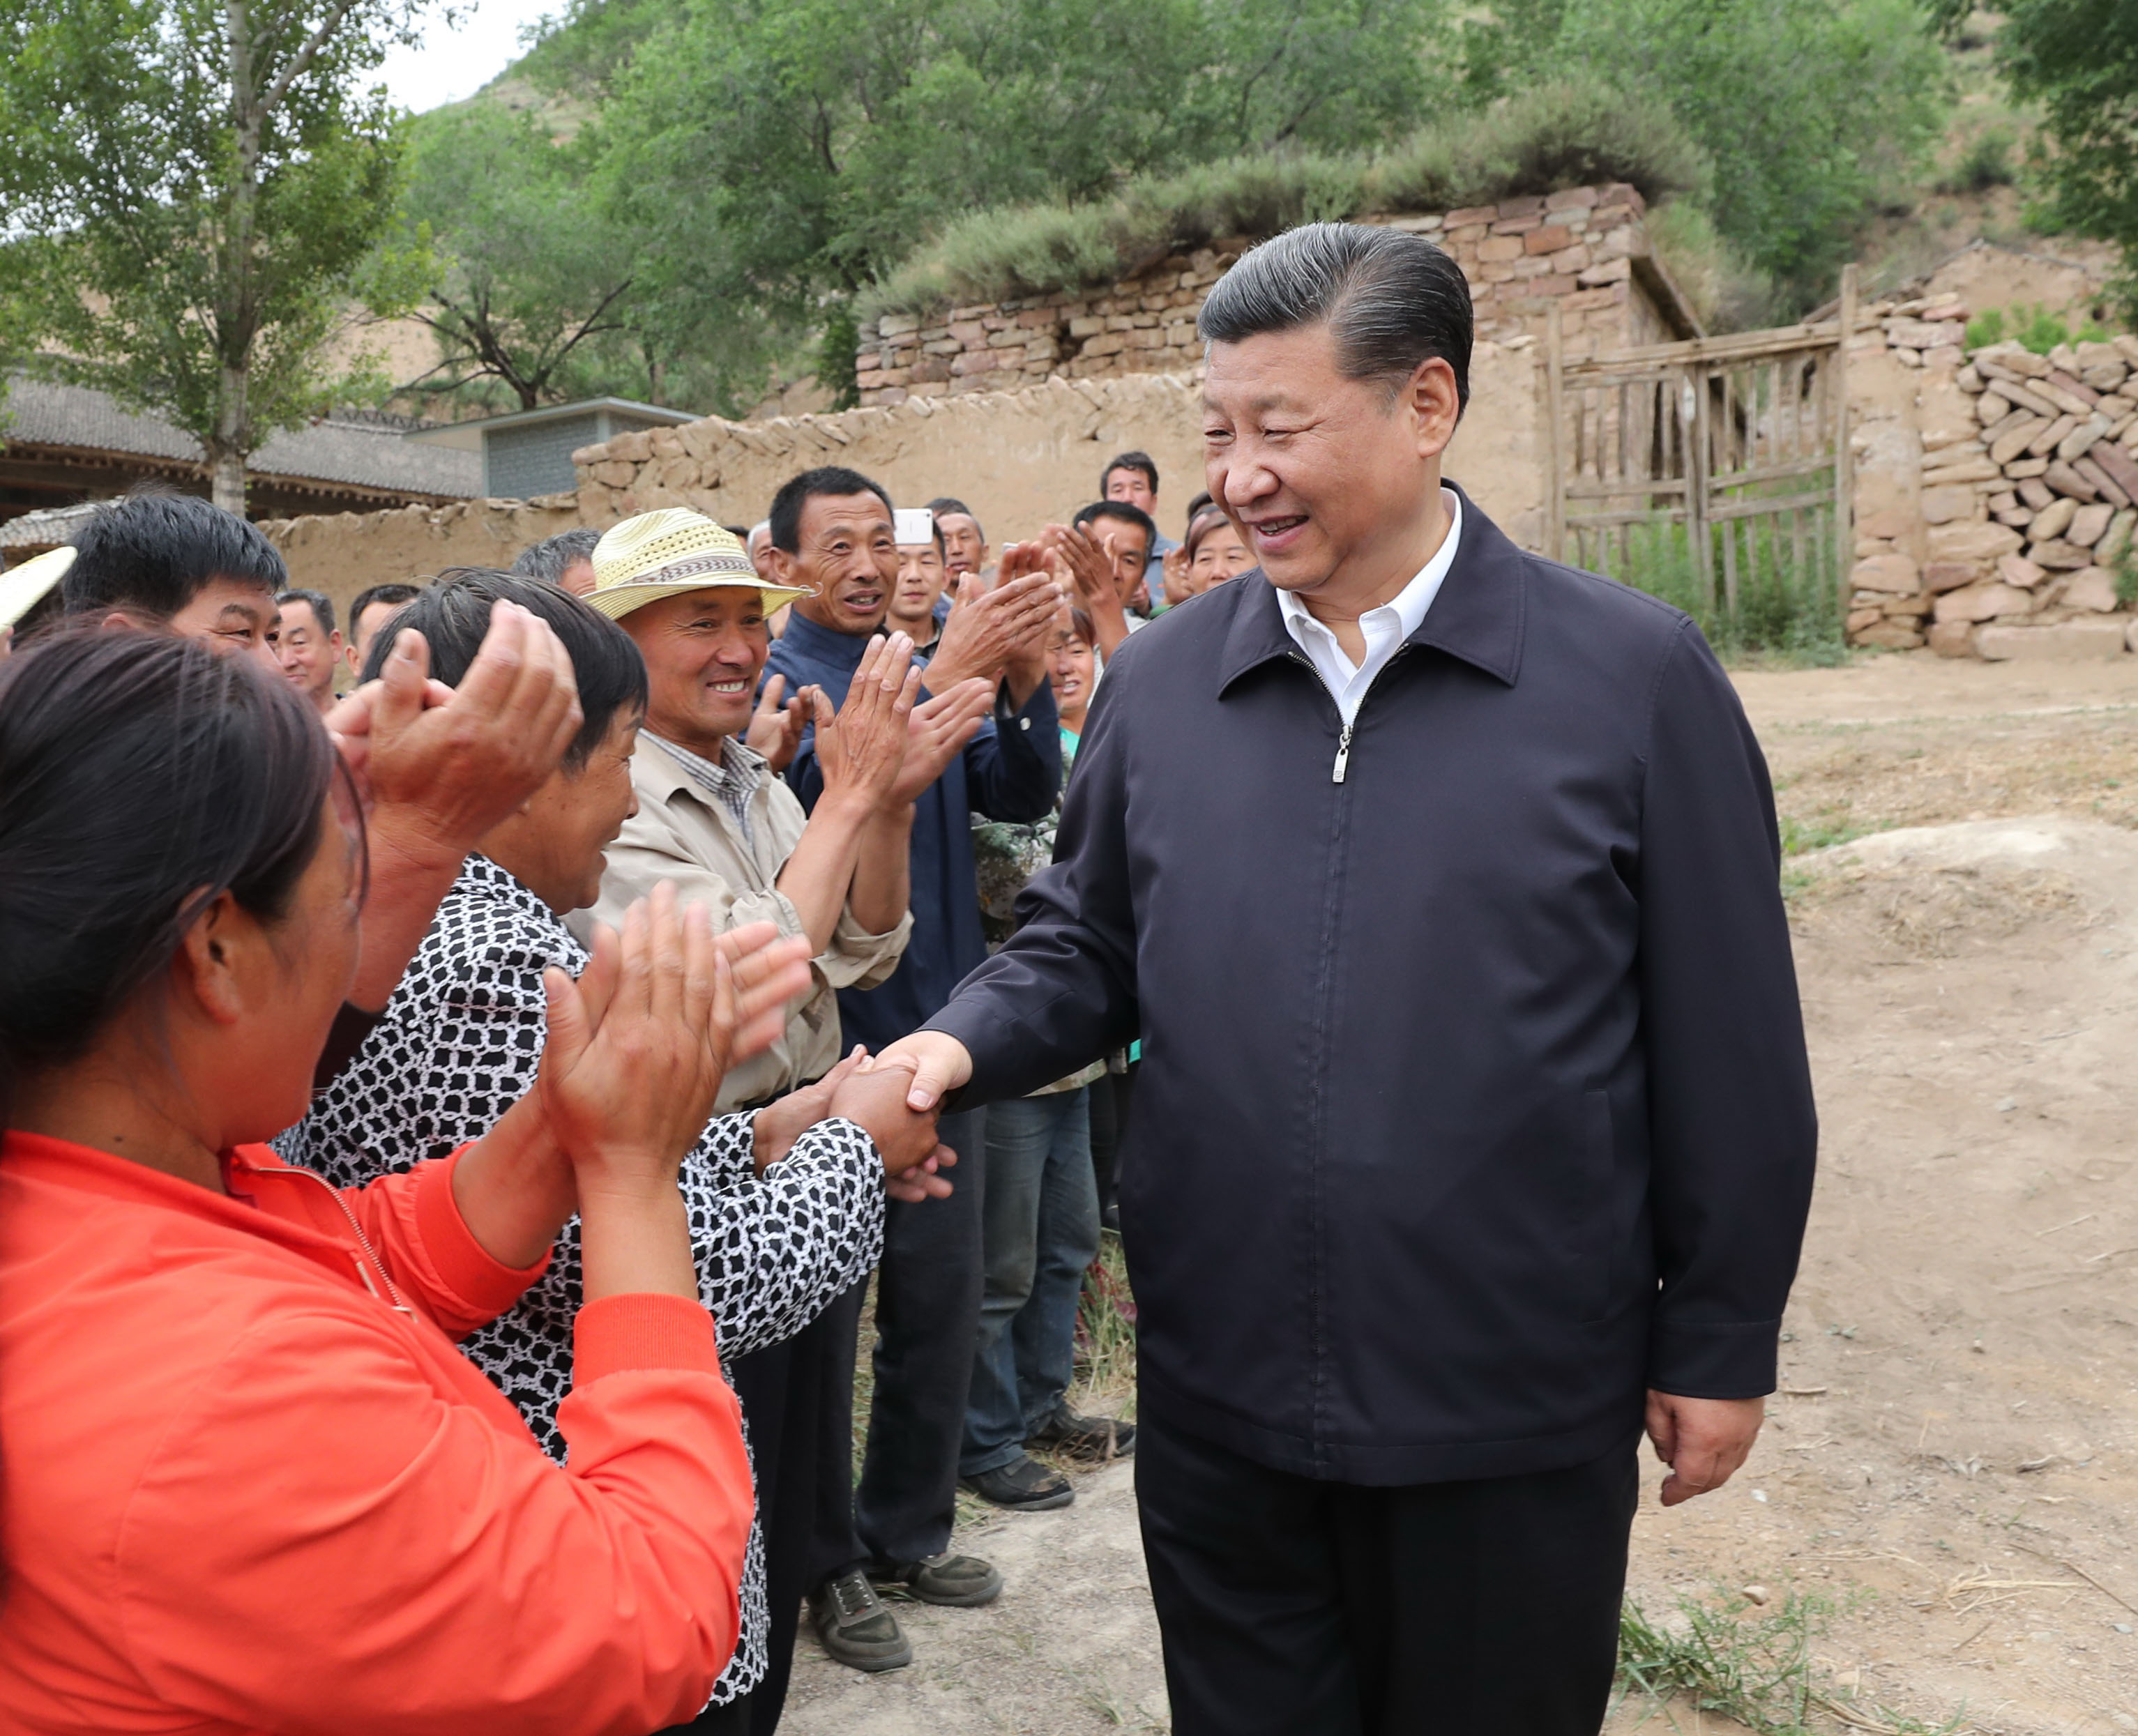 Kínában több millió embert telepítenek ki a félreeső falvakból, hogy ezzel csökkentsék a szegénységet